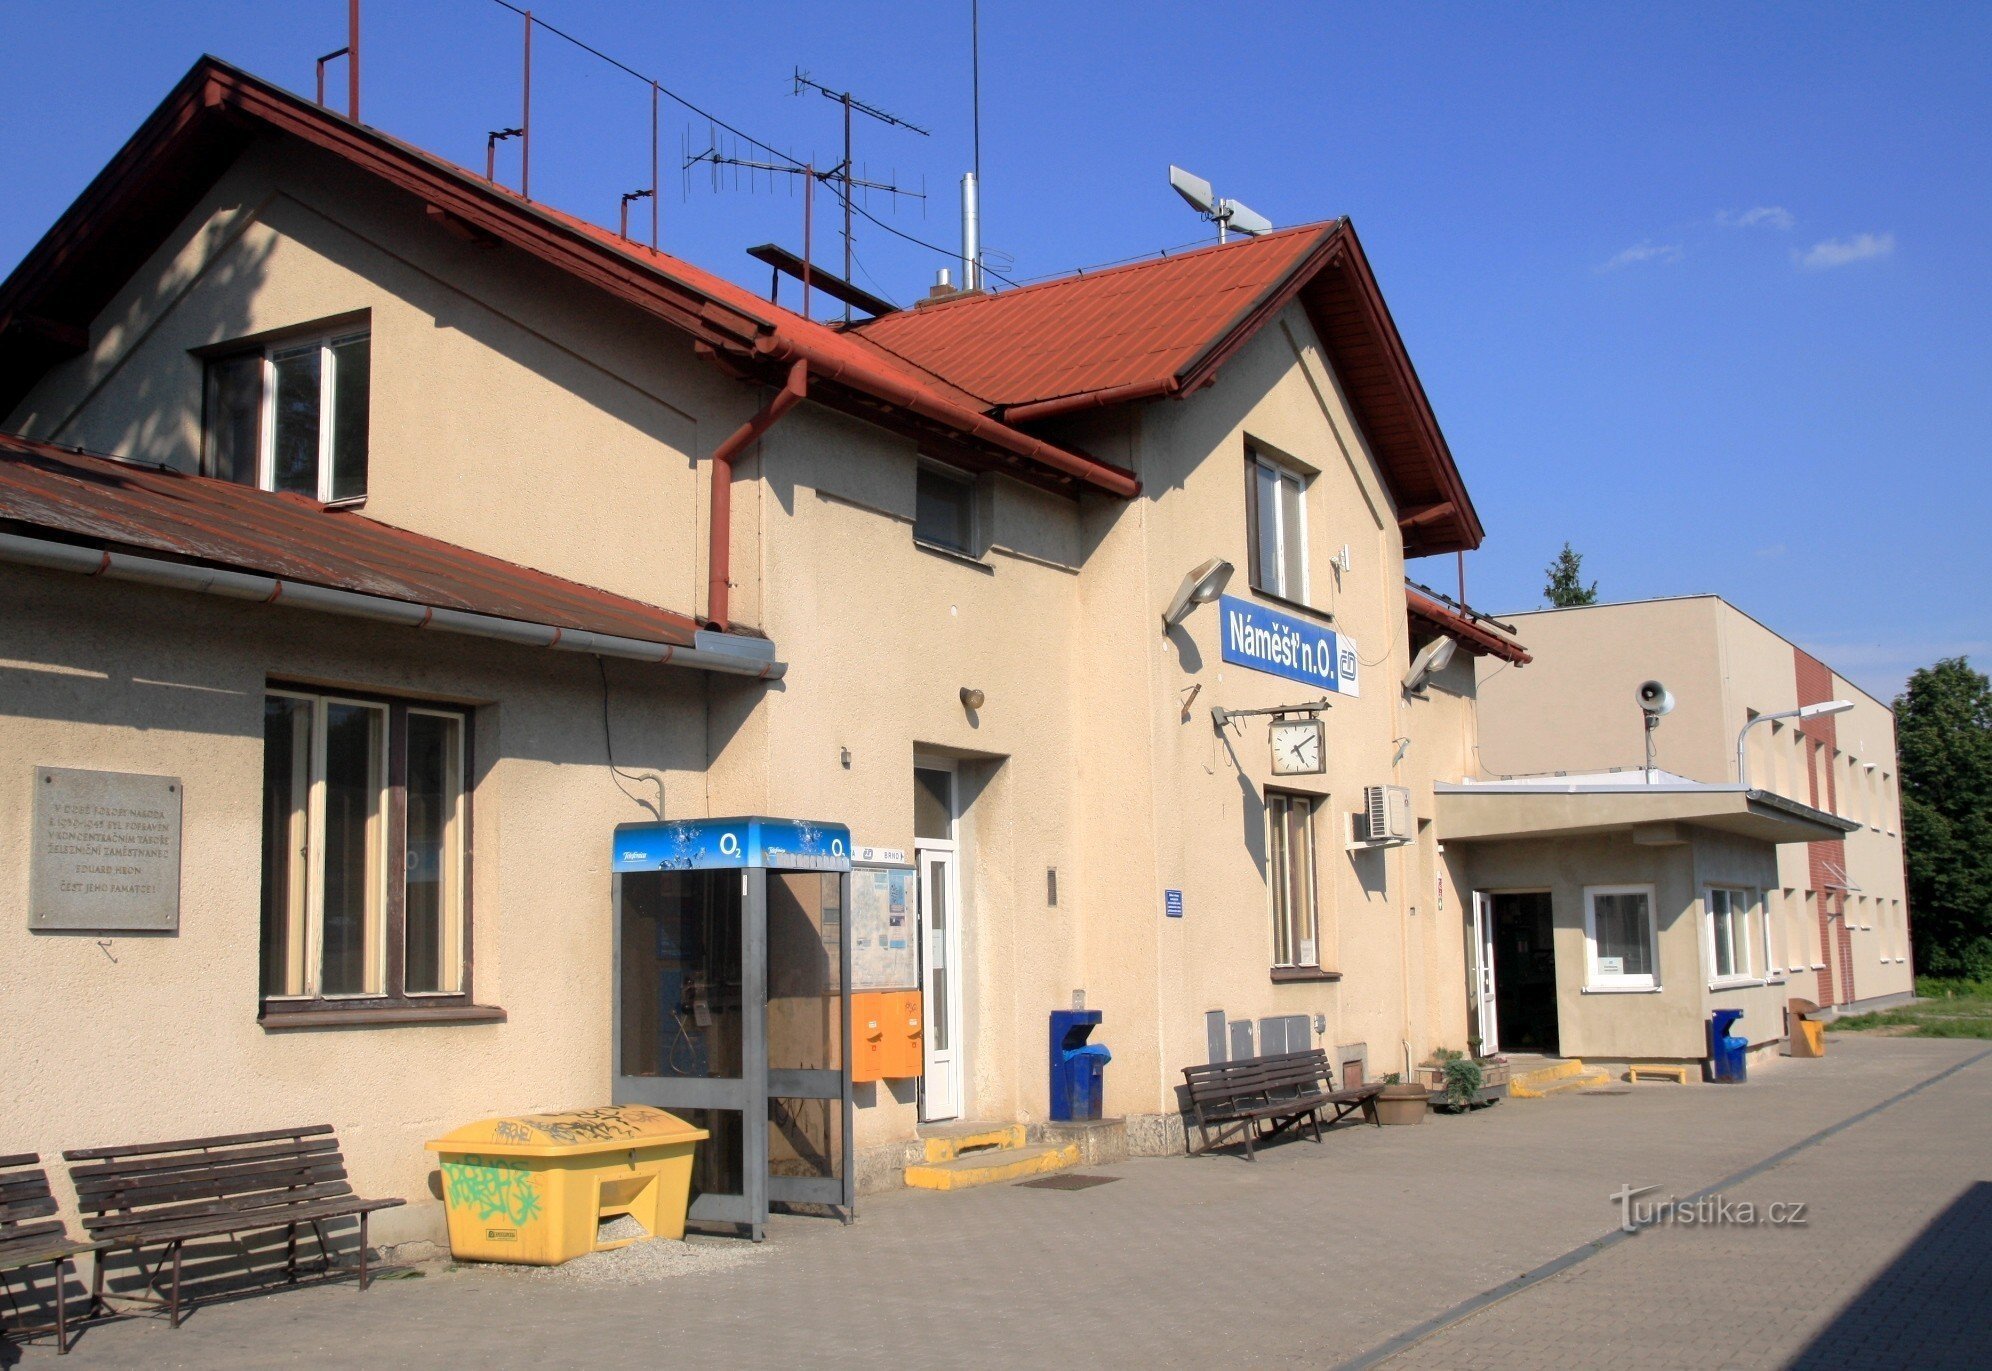 Náměšť nad Oslavou - залізнична станція